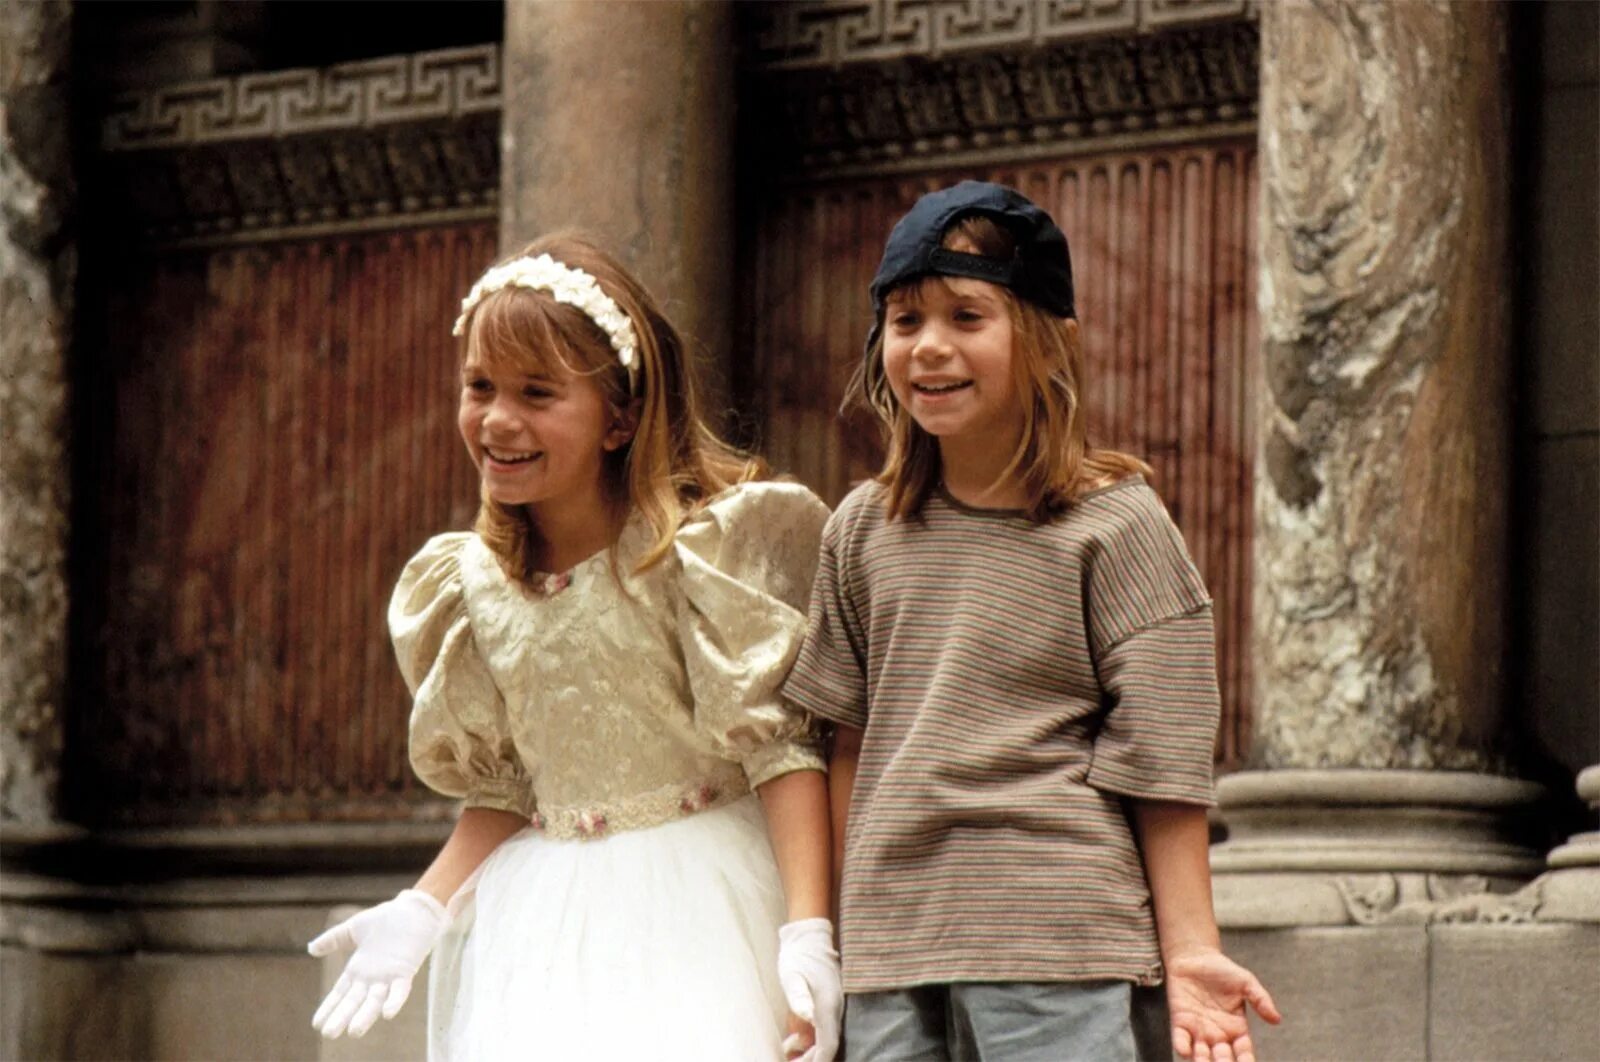 It takes two для двоих. Двое: я и моя тень (1995, США). Сестры Олсен двое я и моя тень.